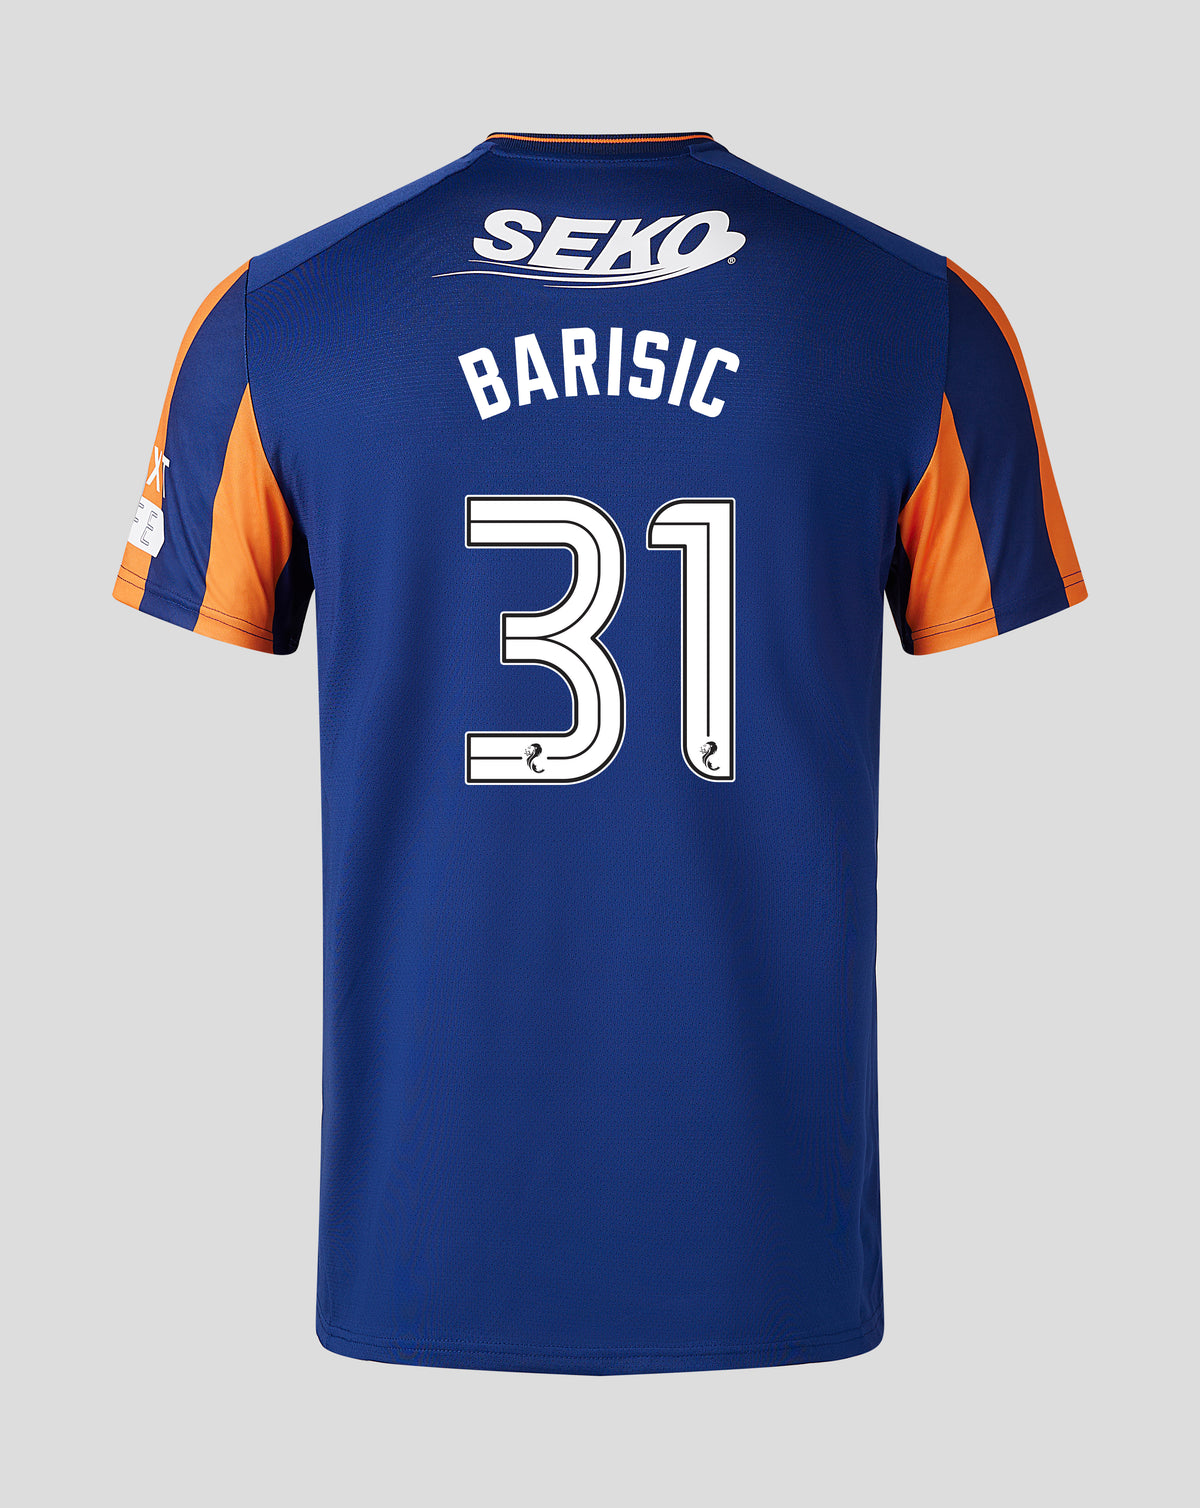 Barisic - Third Kit